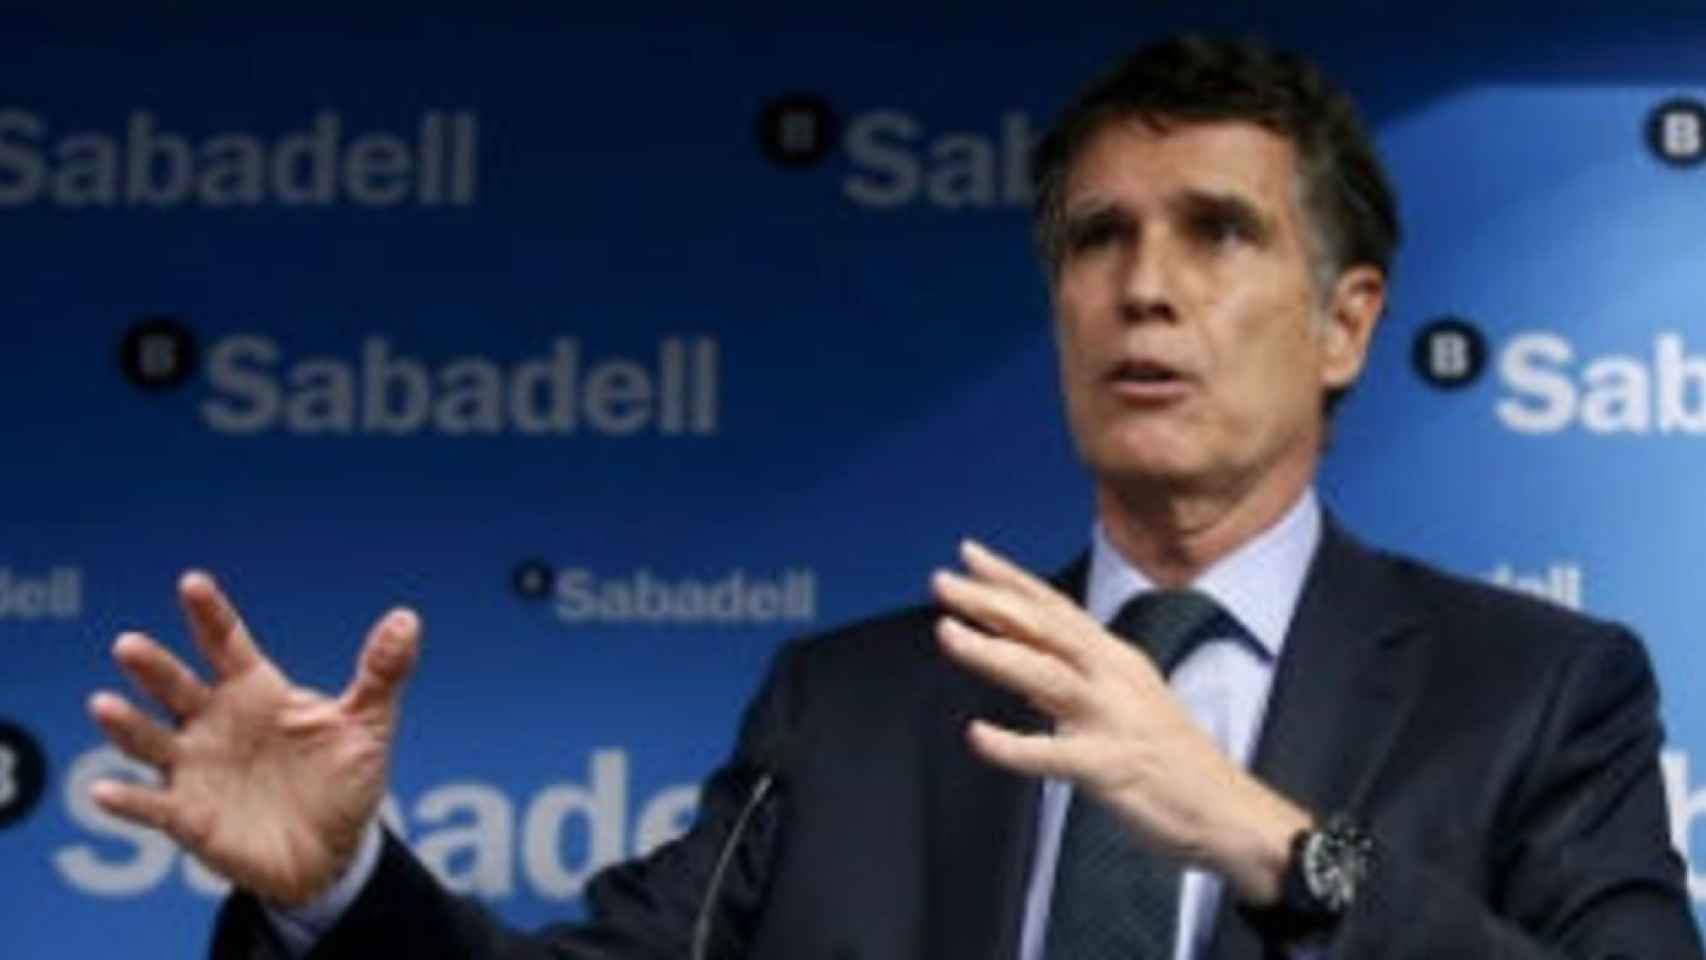 Guardiola (Sabadell) reconoce salida de depósitos, clientes y parón de actividad tras el 1-0